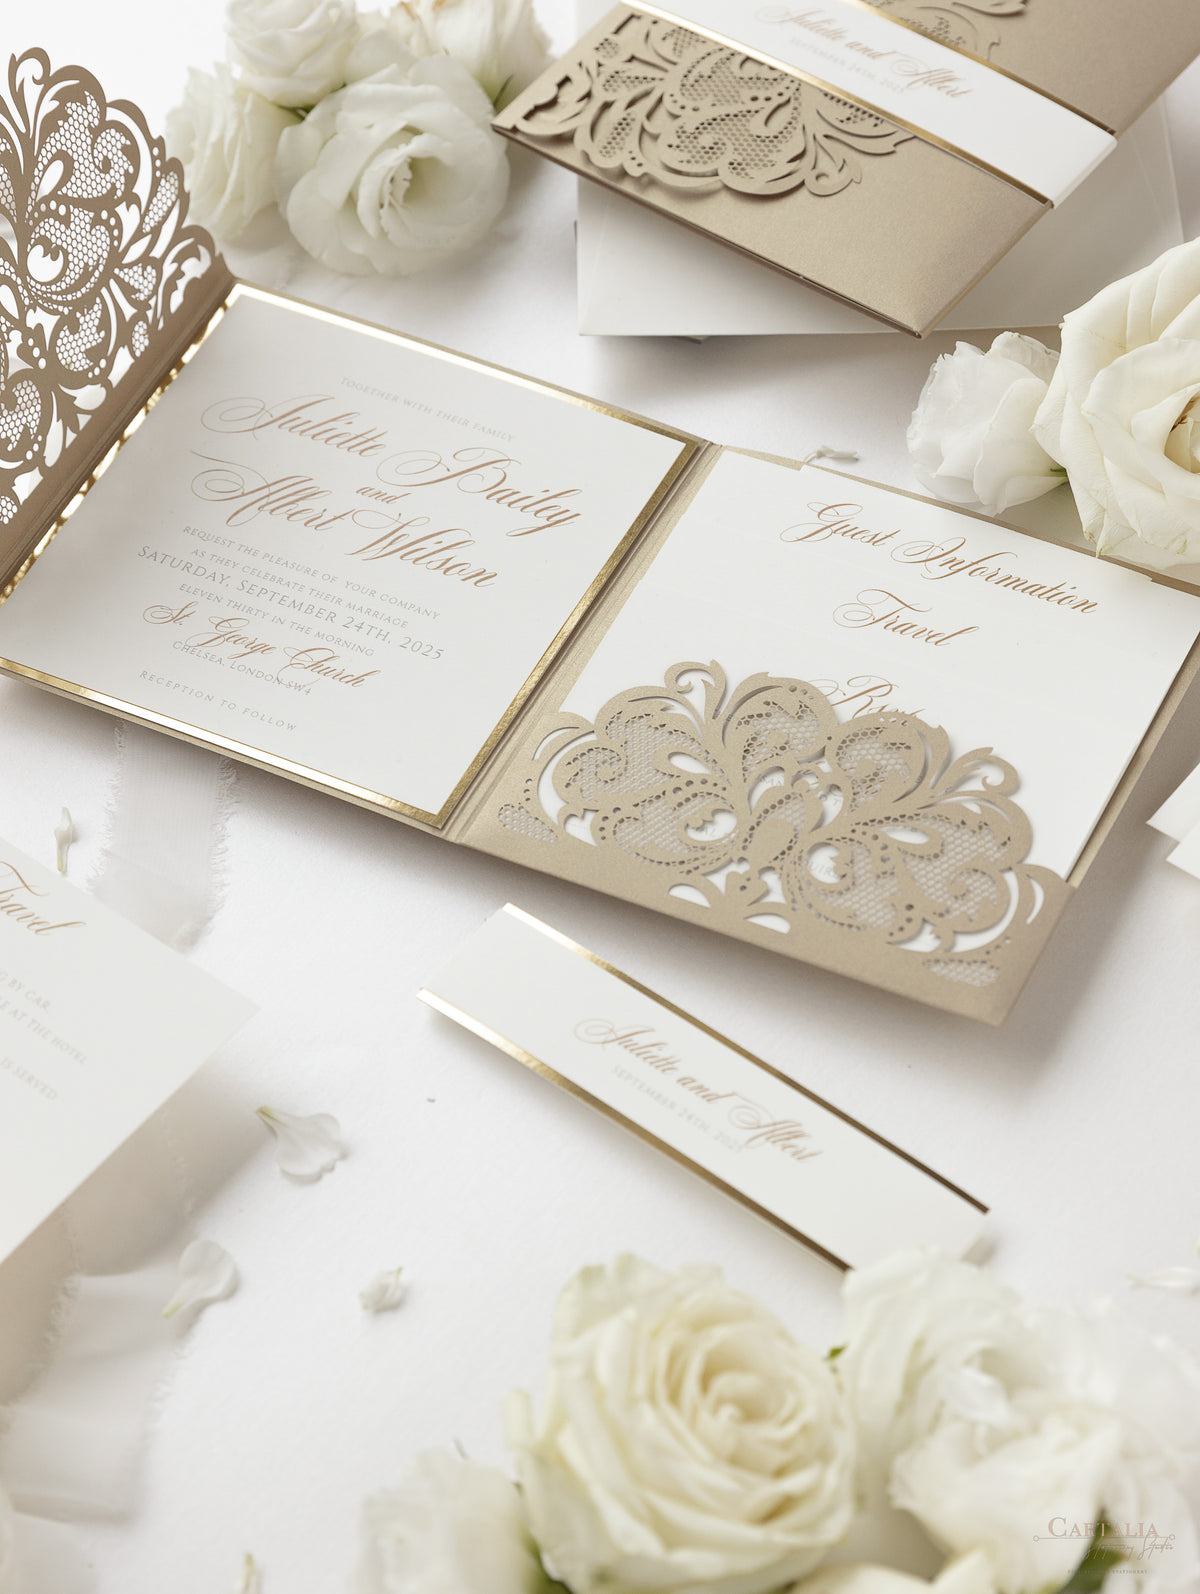 Luxury Old Gold Opulence Laser Cut Lace Pocketfold Wedding Invitation Suite avec 3 niveaux: Informations invitées et voyage et carte RSVP